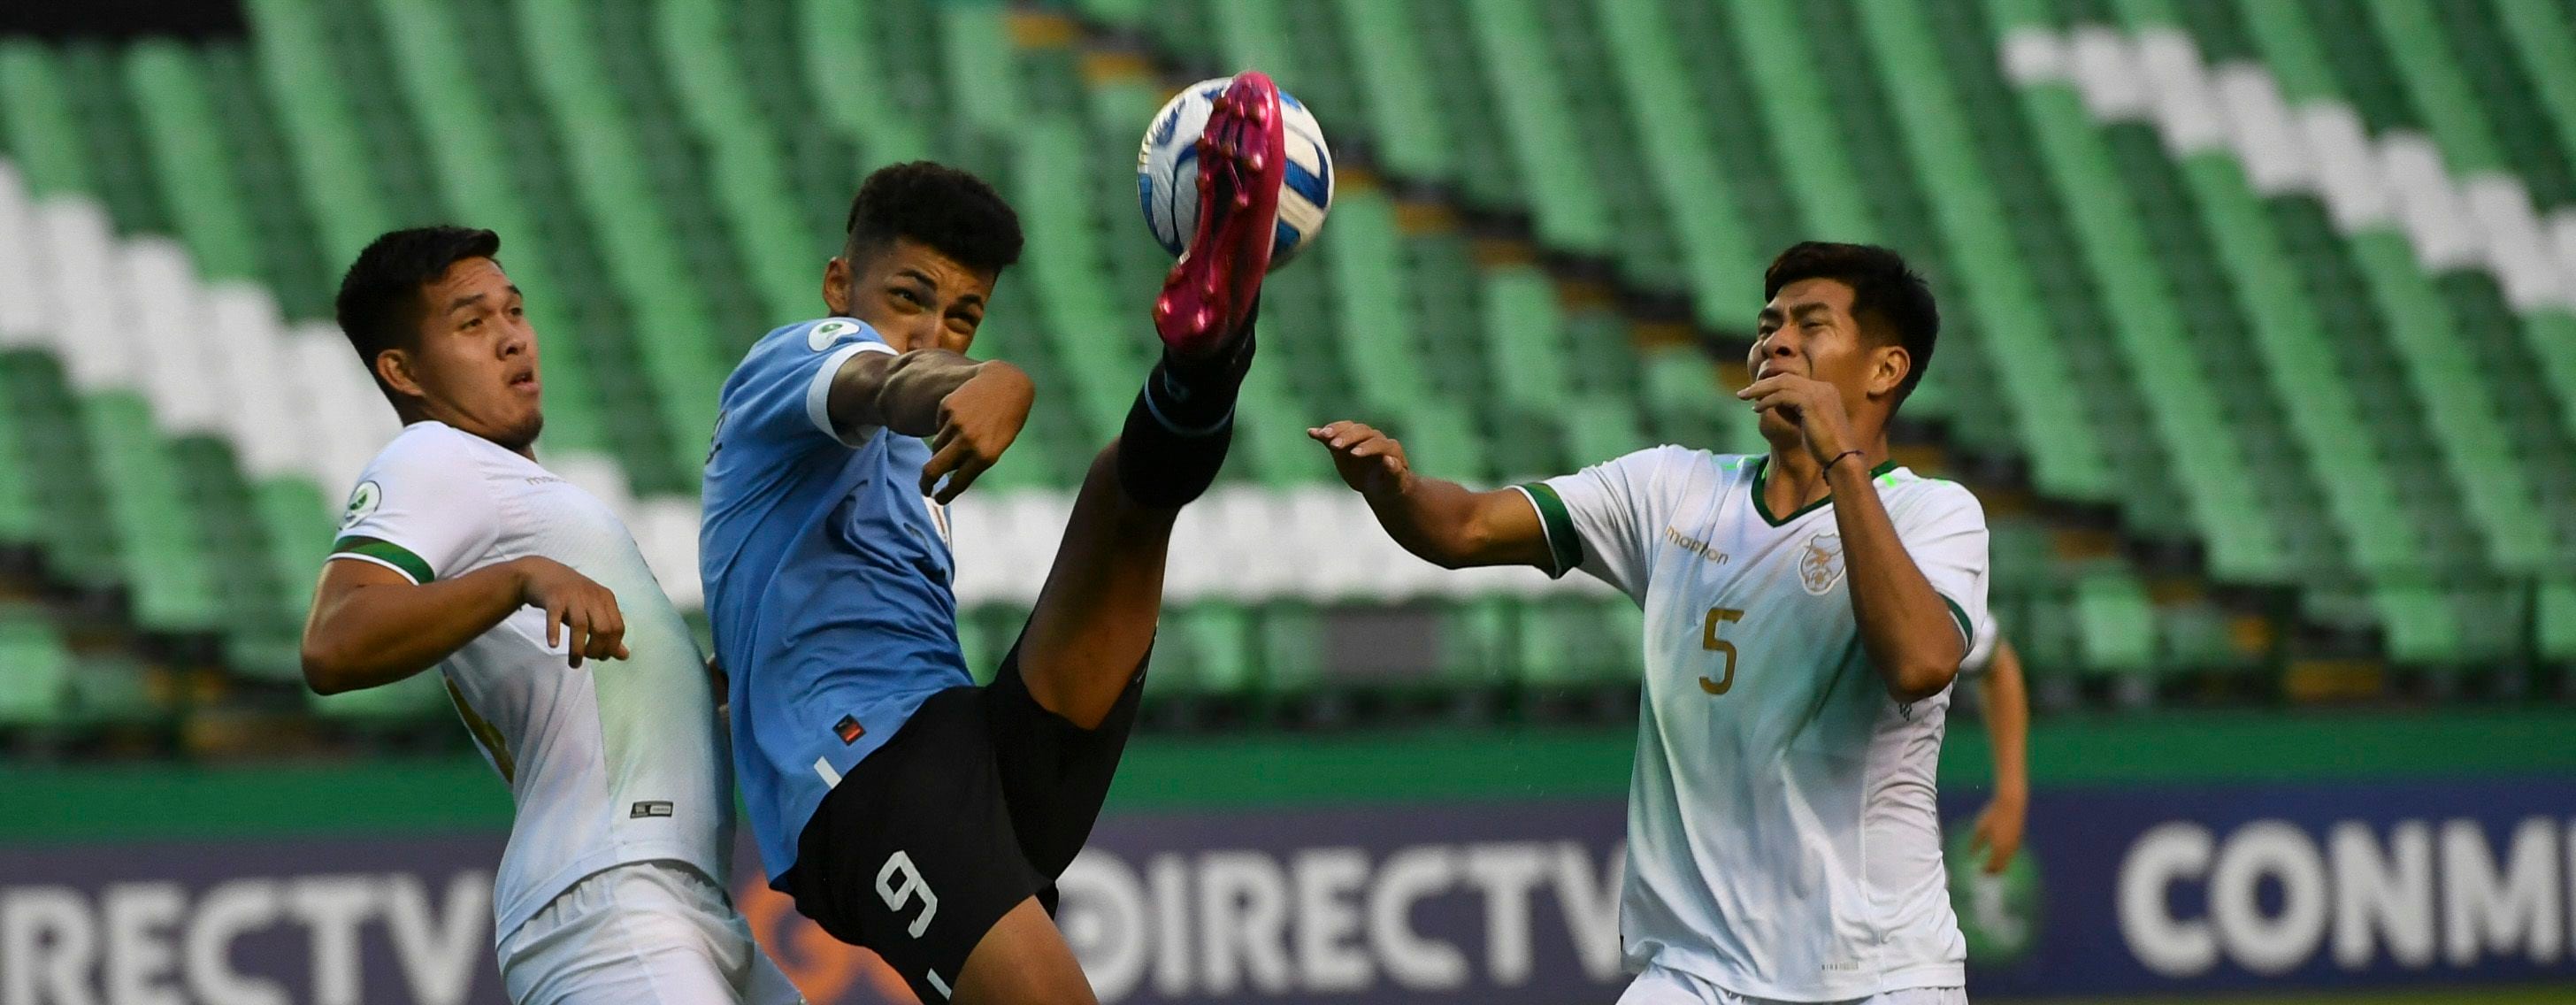 Uruguay 4-1 Bolivia: charrúas logran puntaje perfecto y se clasifican a la fase final del Sudamericano sub-20 